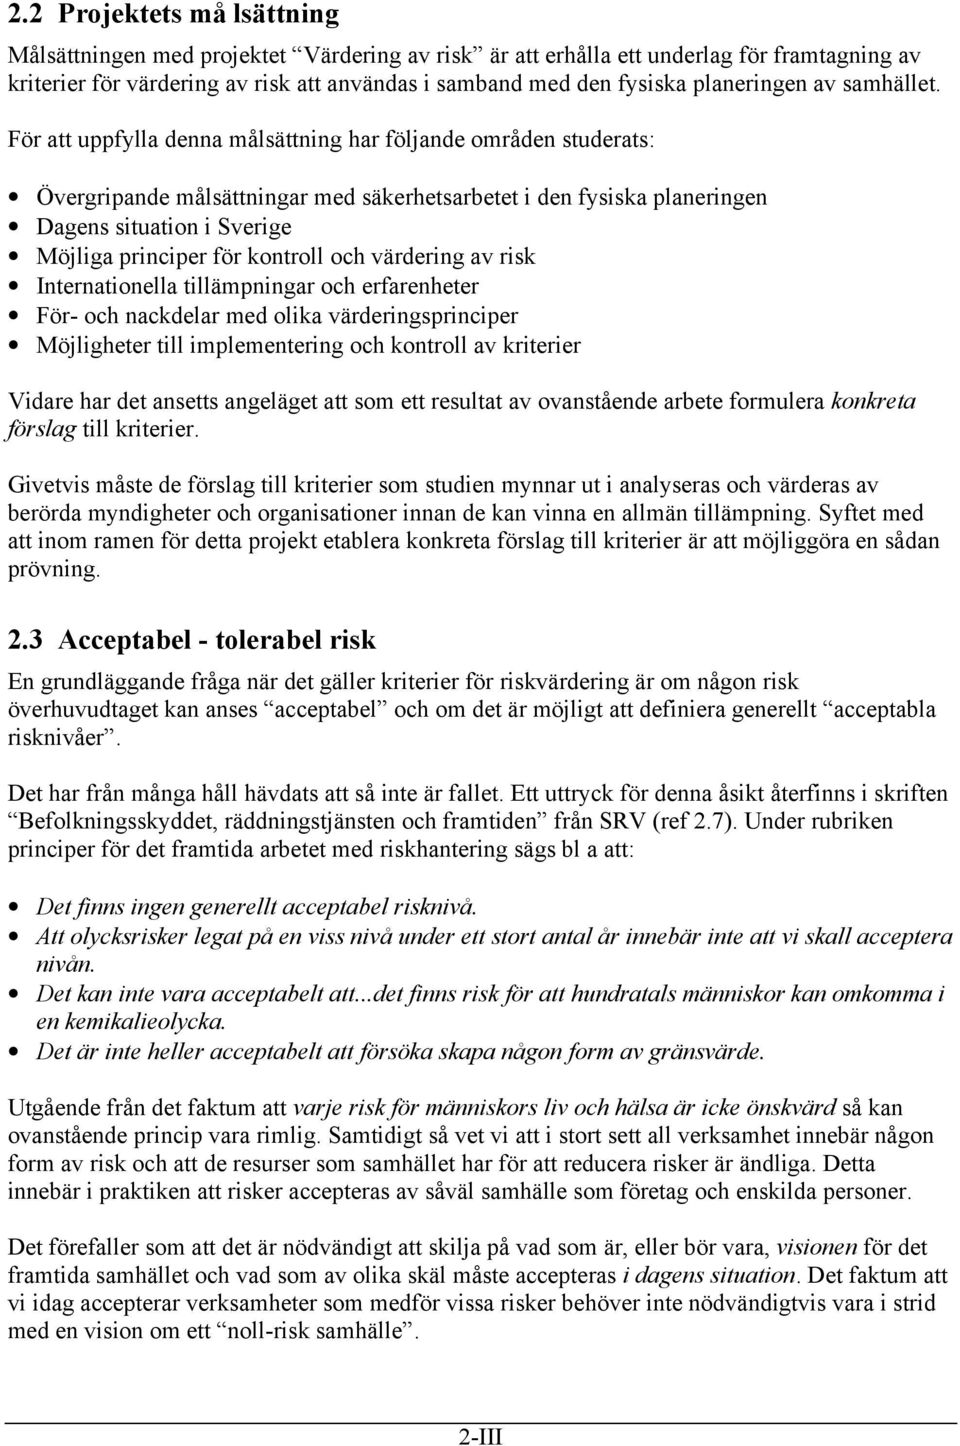 För att uppfylla denna målsättning har följande områden studerats: Övergripande målsättningar med säkerhetsarbetet i den fysiska planeringen Dagens situation i Sverige Möjliga principer för kontroll